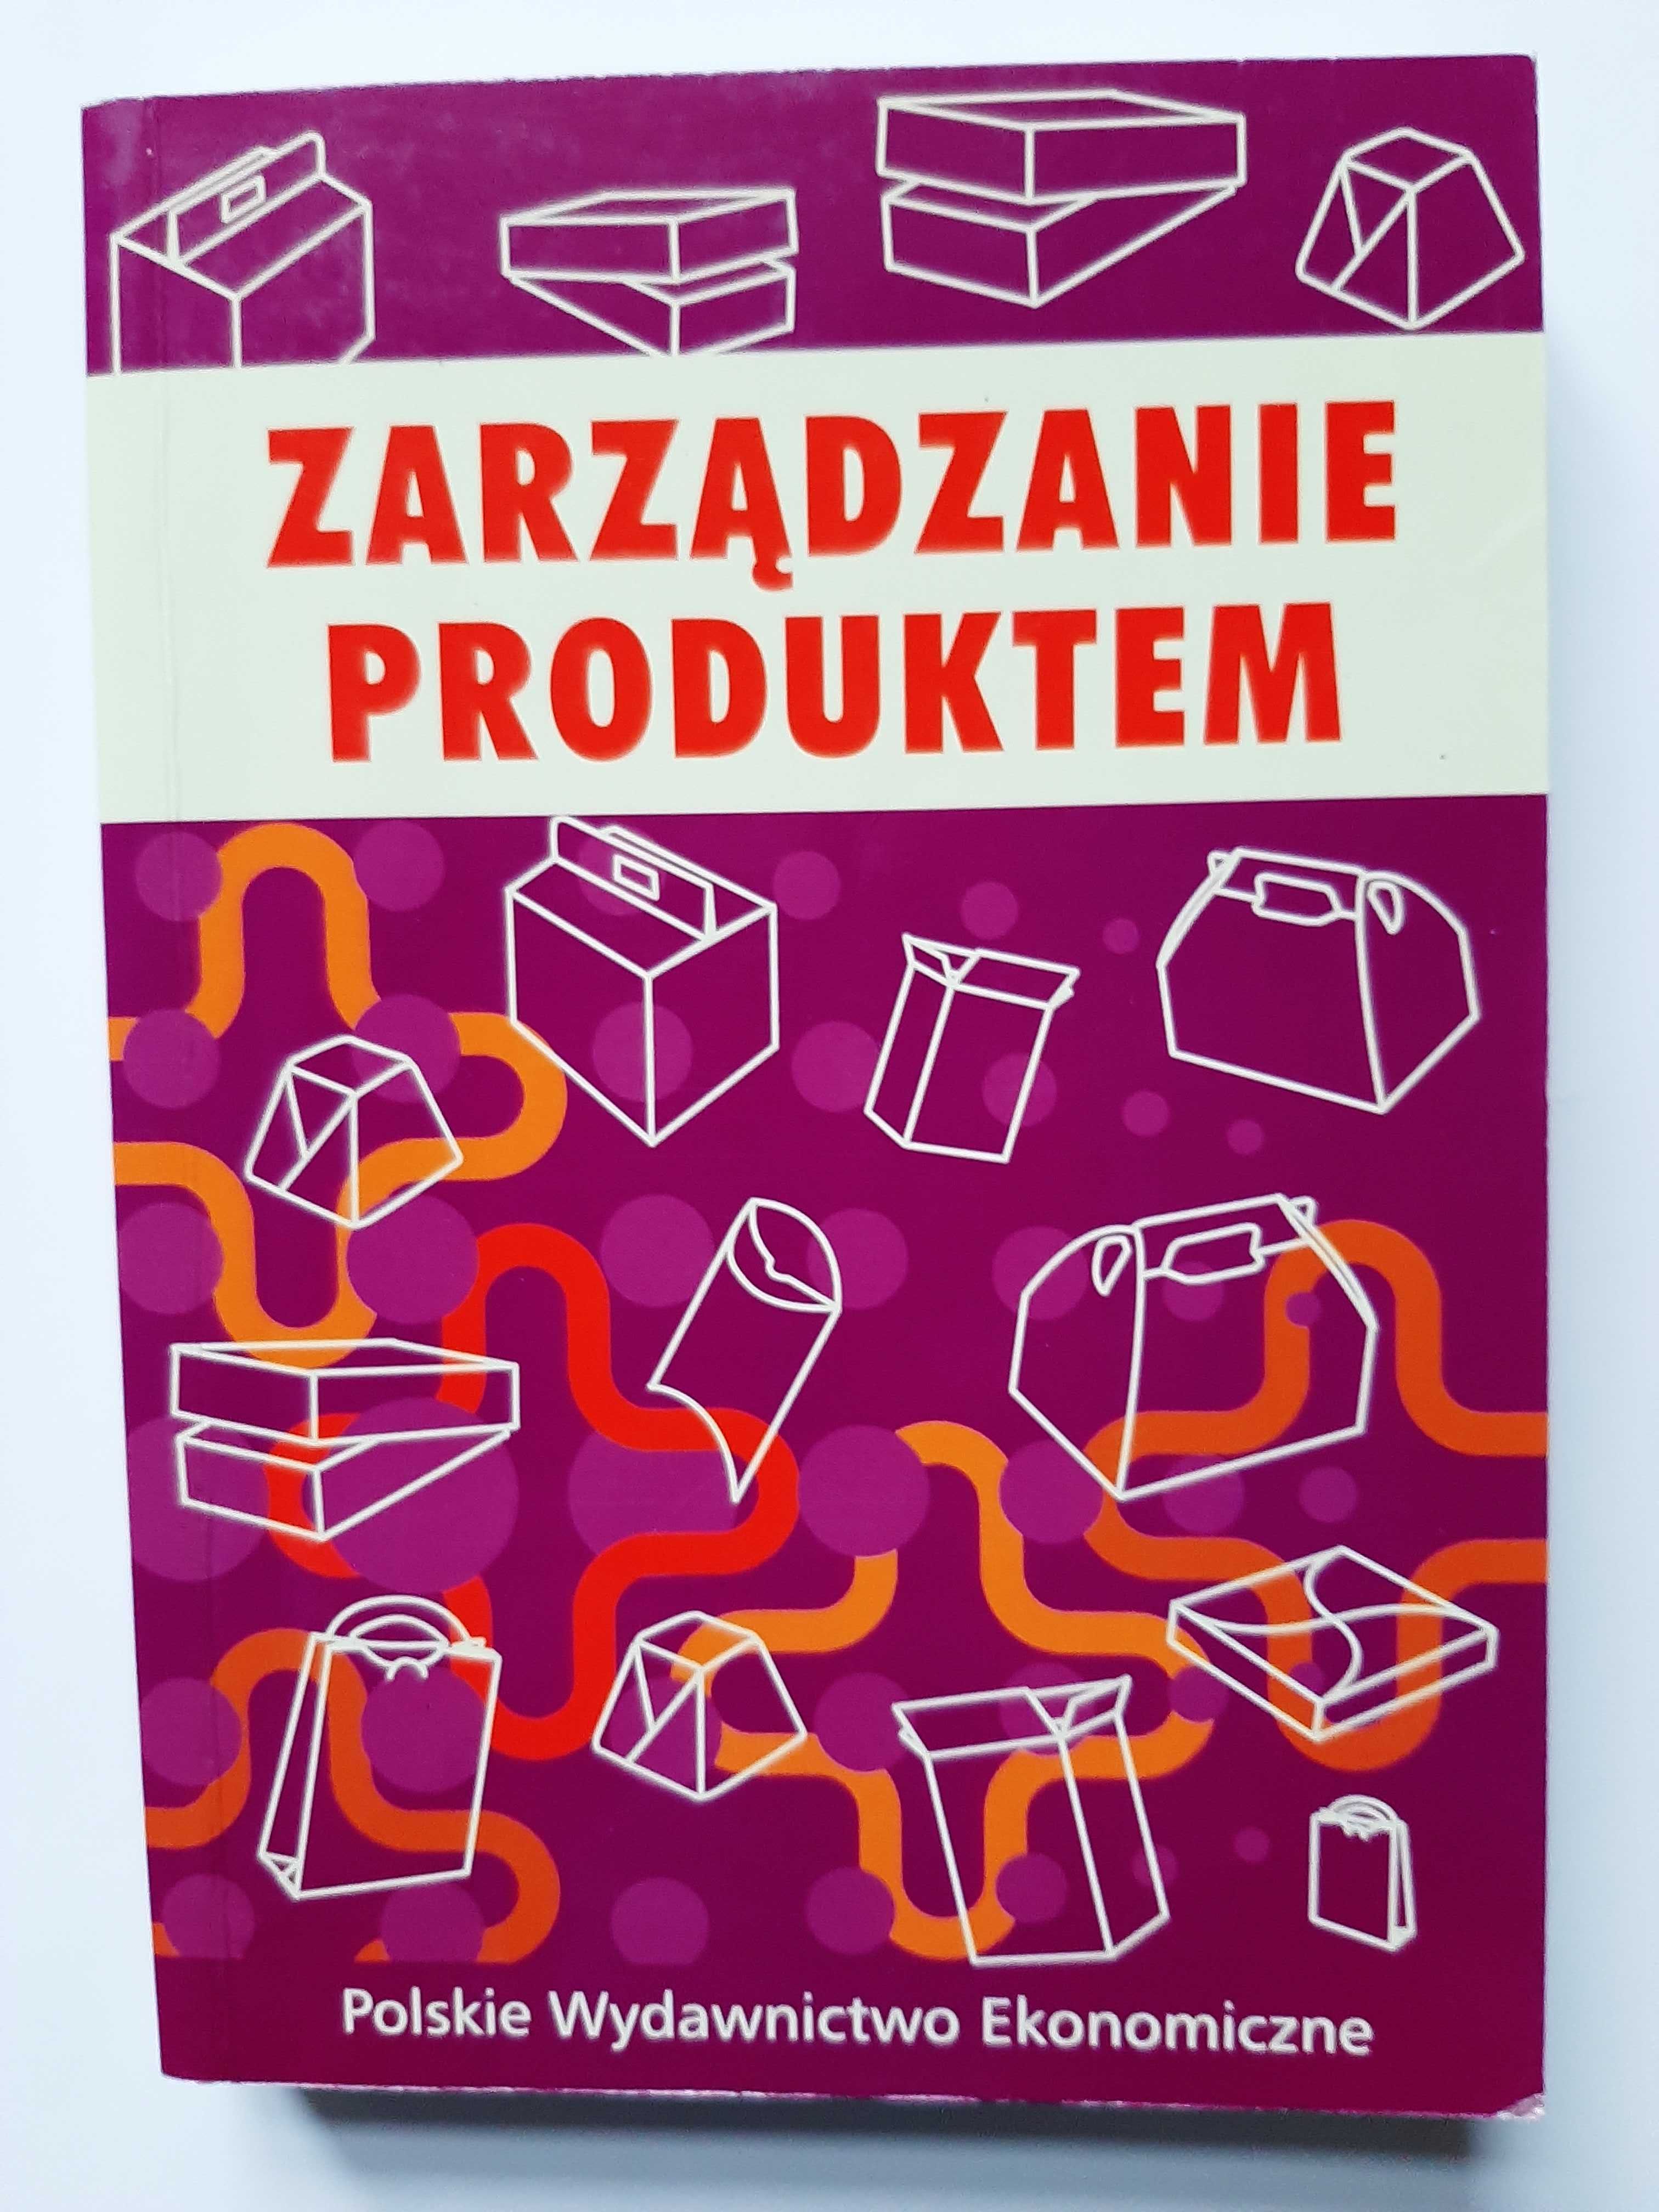 Zarządzanie produktem
Praca zbiorowa pod redakcją Bogdana Sojkina